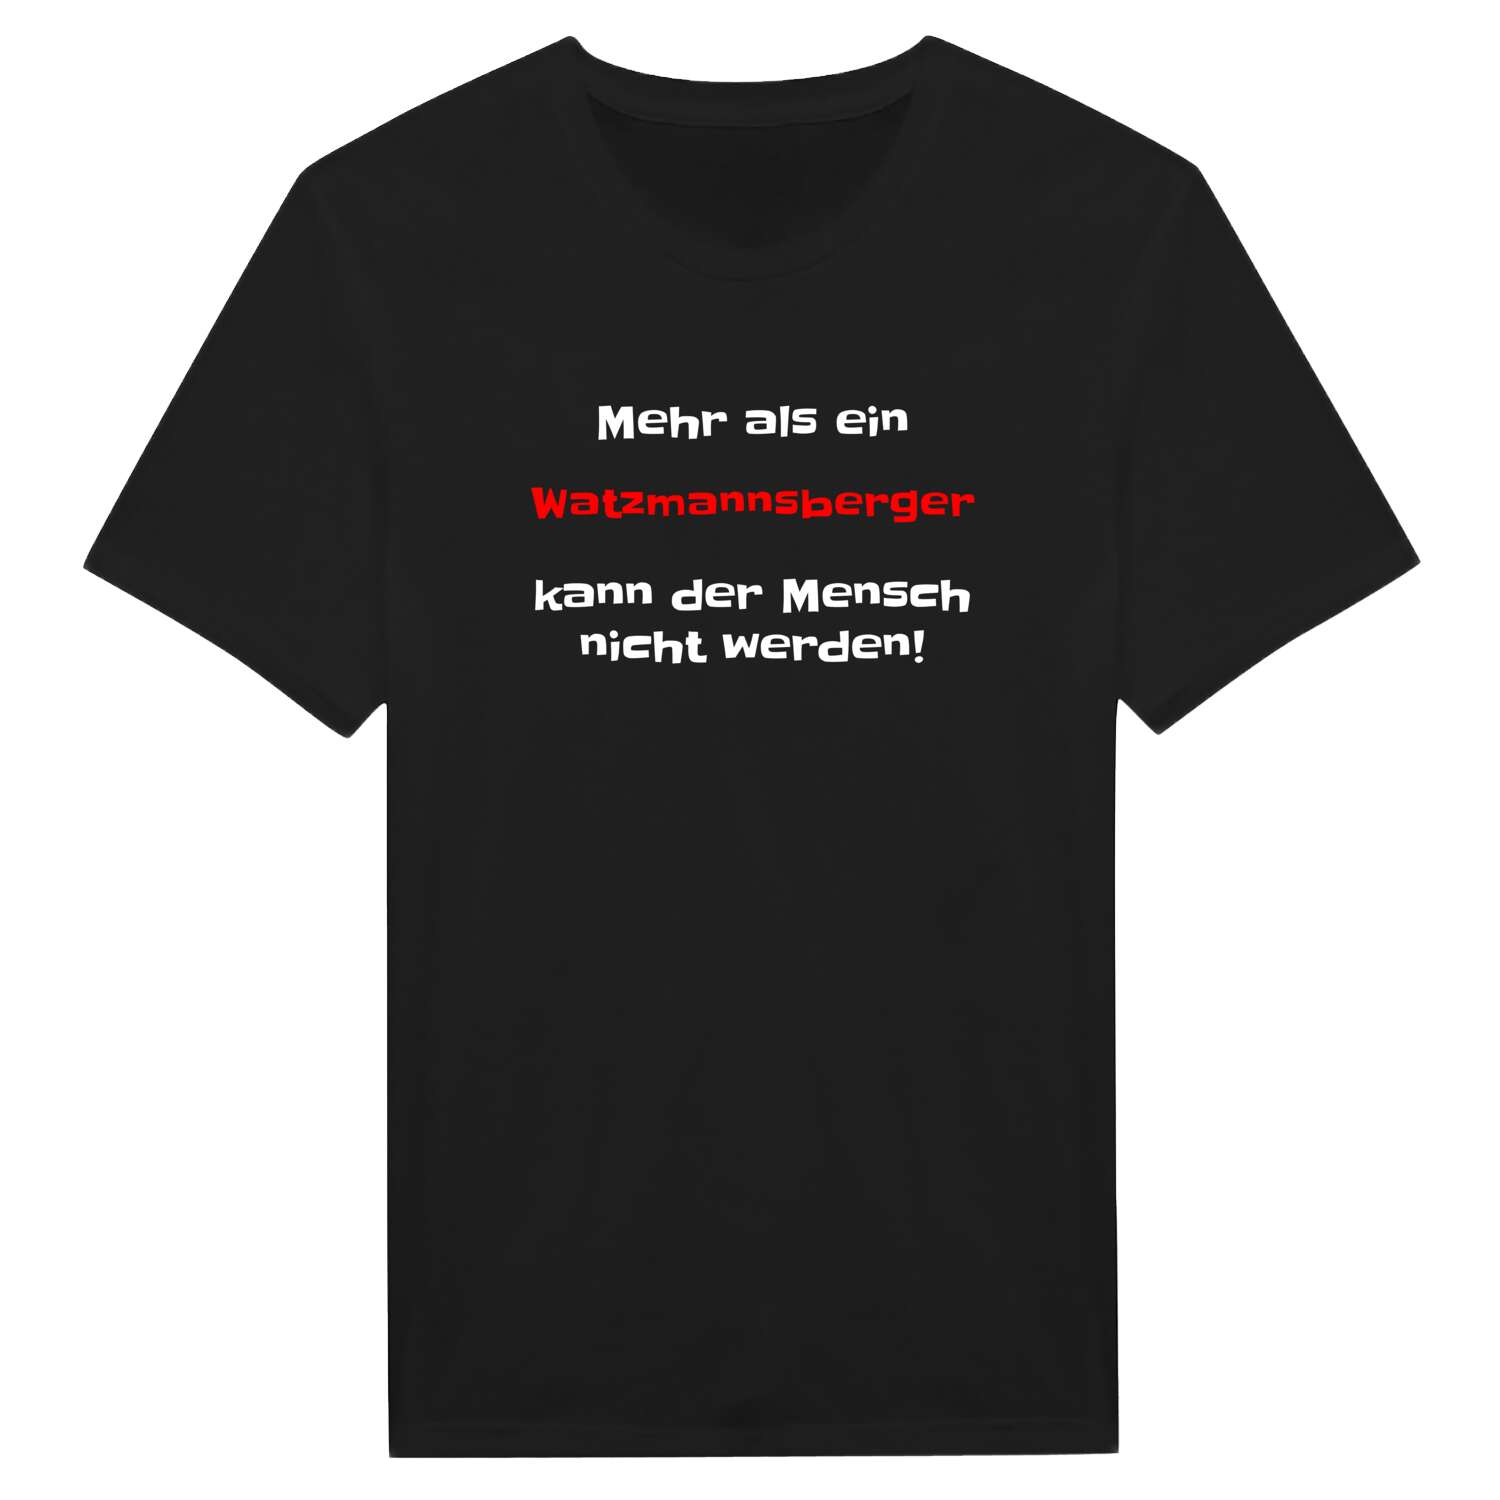 Watzmannsberg T-Shirt »Mehr als ein«